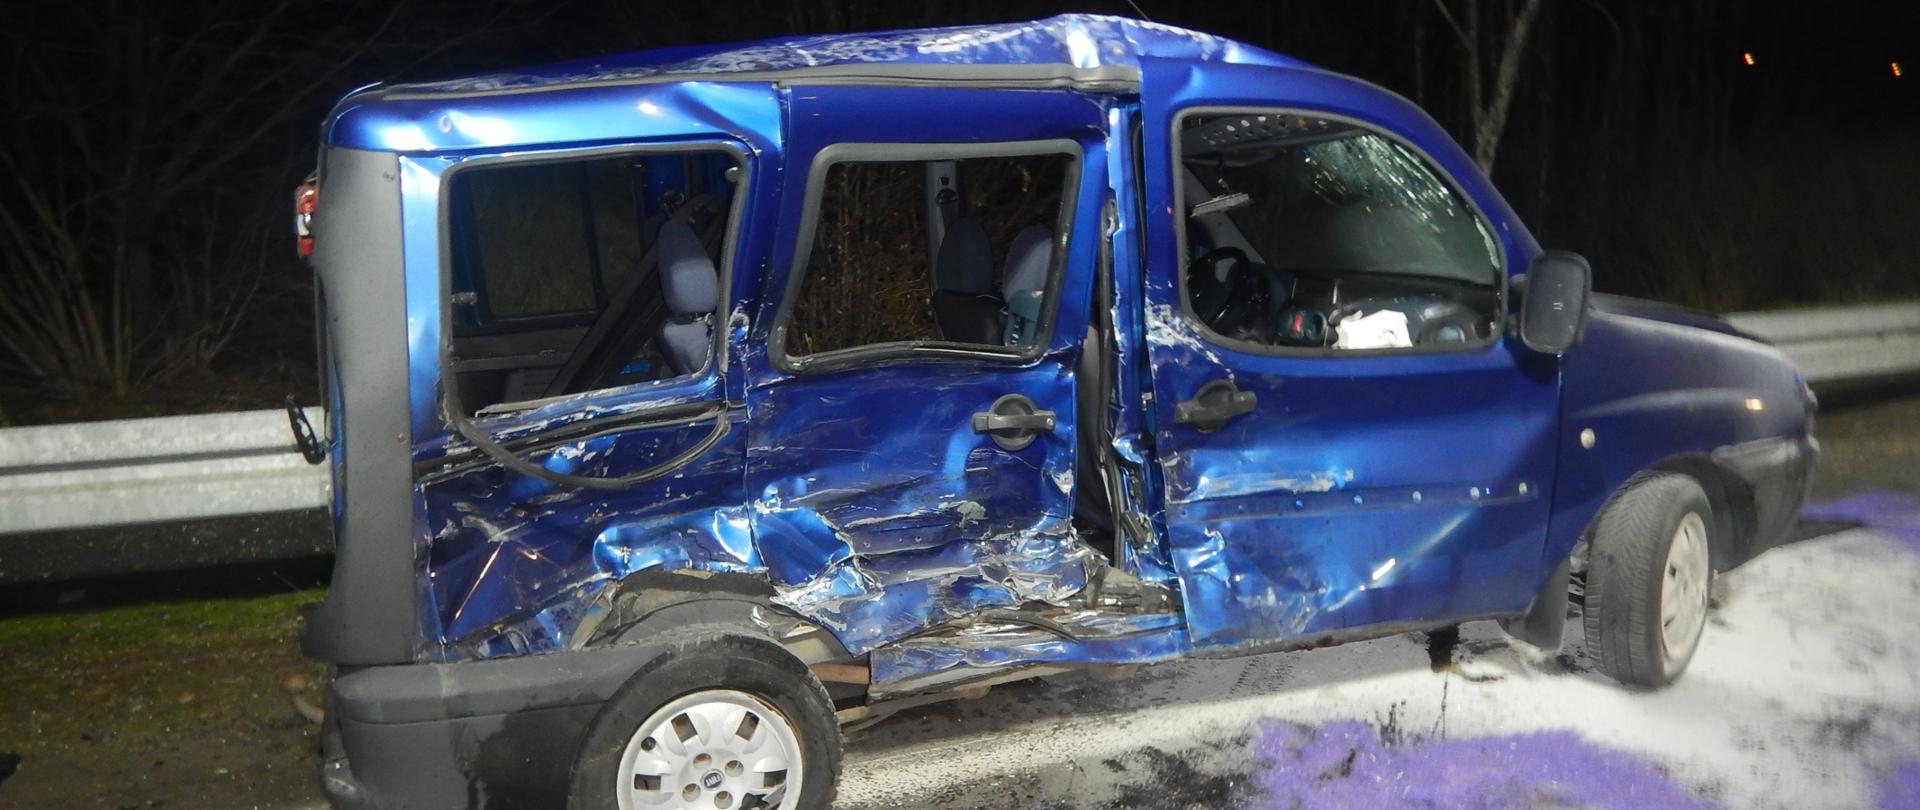 Zdjęcie przedstawia niebieski samochód osobowy, który ma uszkodzony prawy bok w wyniku zdarzenia.